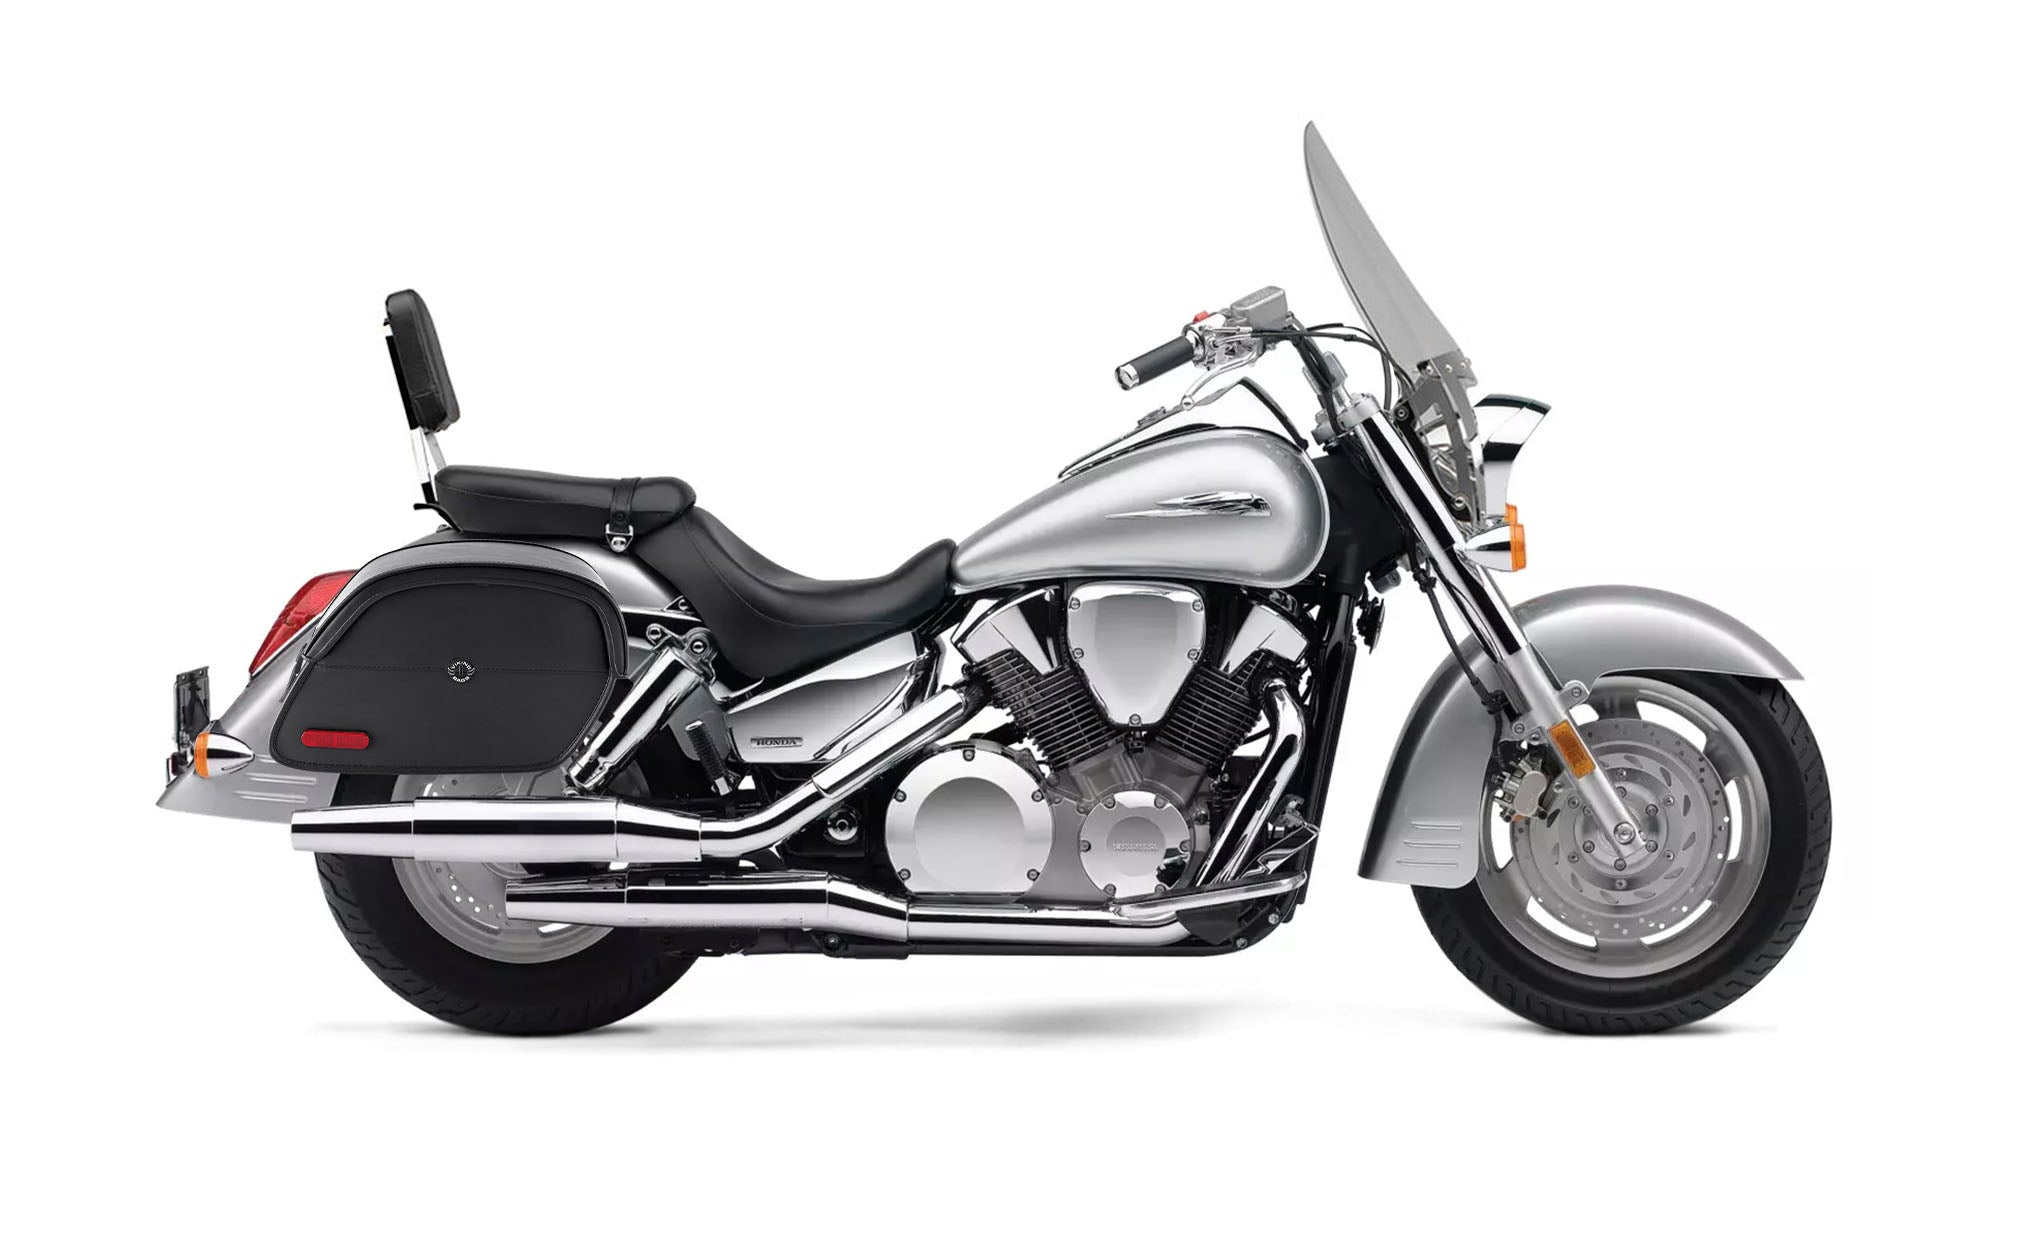 Viking California Large Honda Vtx 1300 T Tourer Leather Motorcycle Saddlebags on Bike Photo @expand